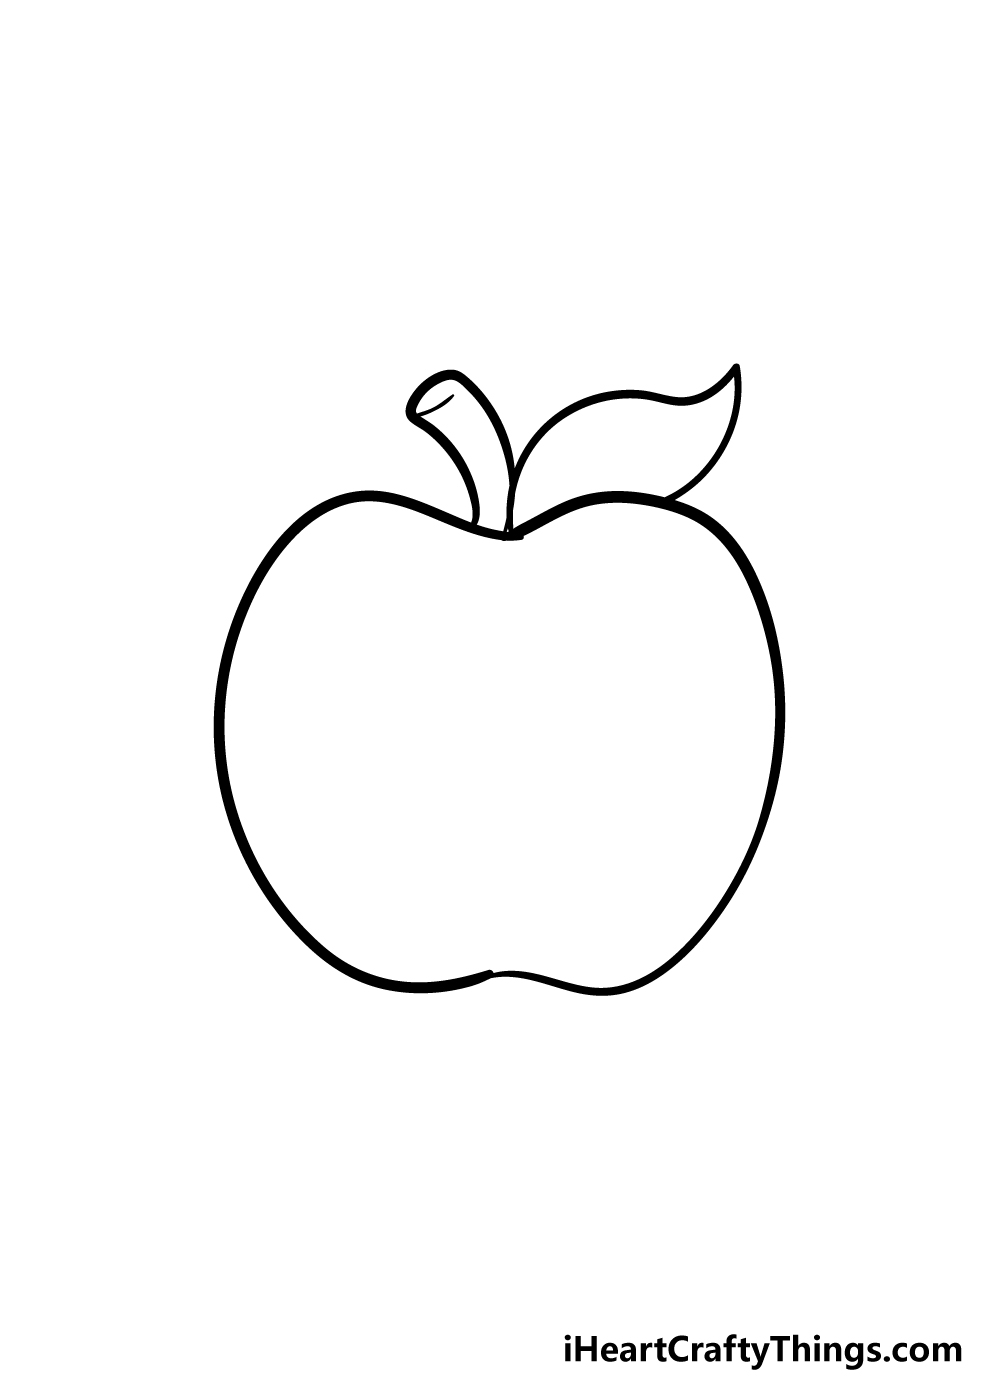 Apple 4 - Hướng dẫn chi tiết cách vẽ quả táo đơn giản với 6 bước cơ bản